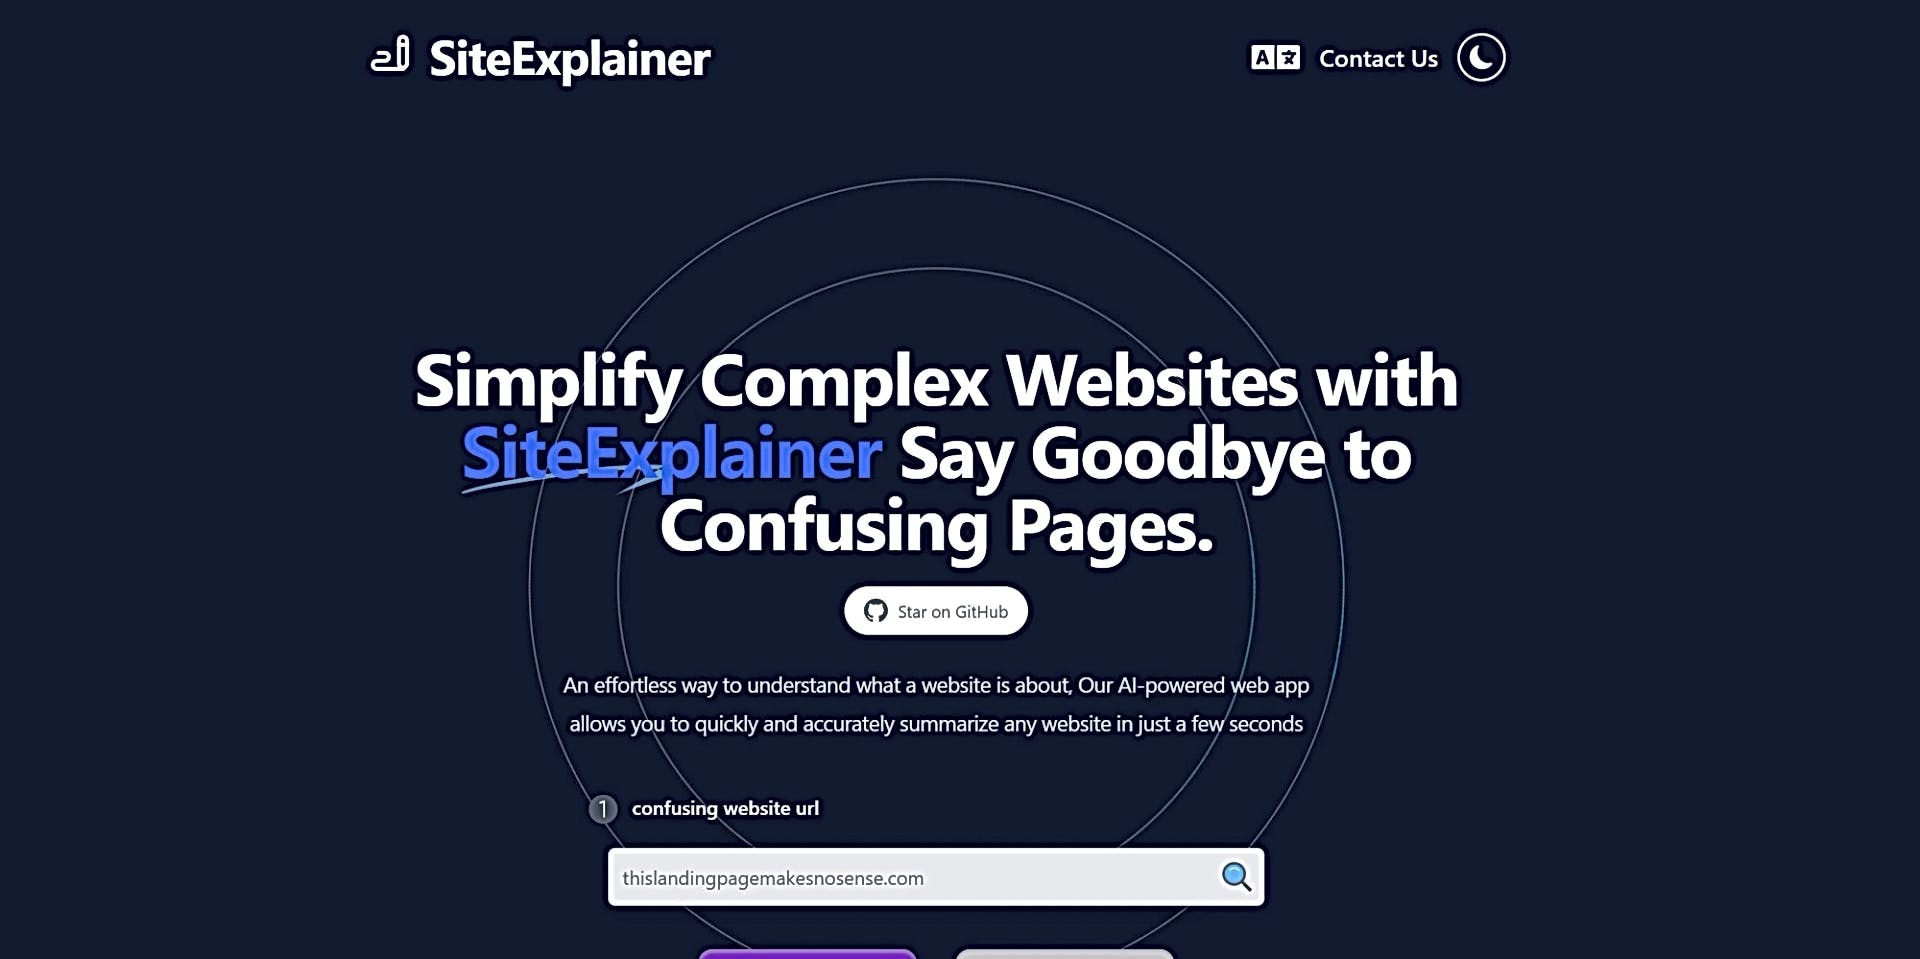 SiteExplainer featured